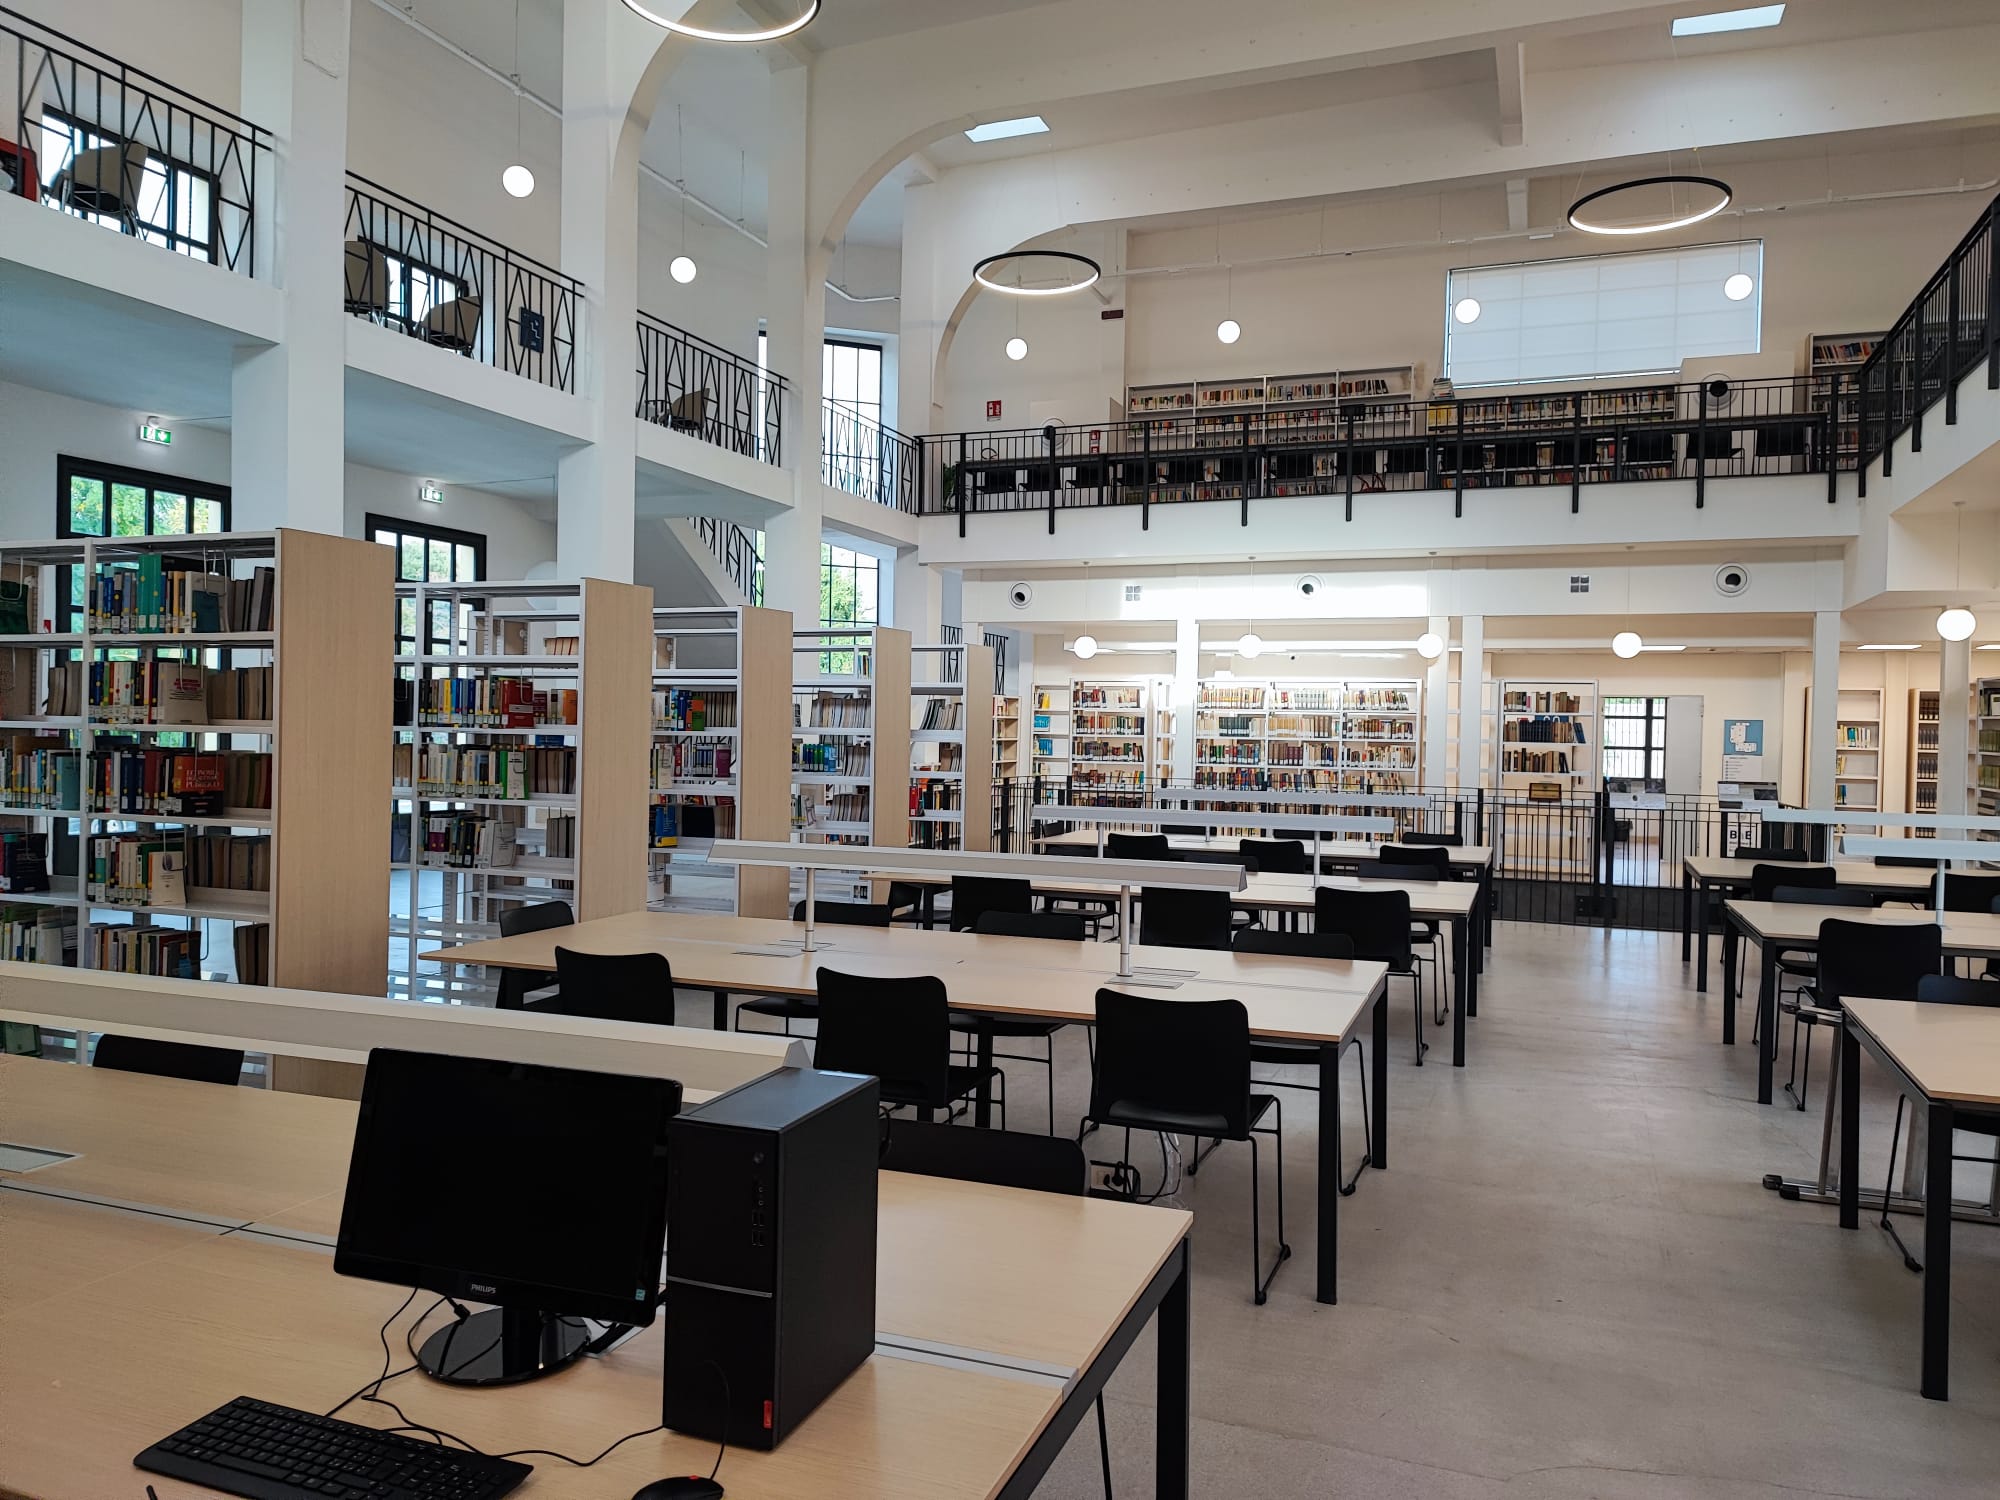 Galleria Community Library: Inaugurata oggi la nuova sede della Biblioteca di Area economica dell’Università di Foggia. - Diapositiva 7 di 8